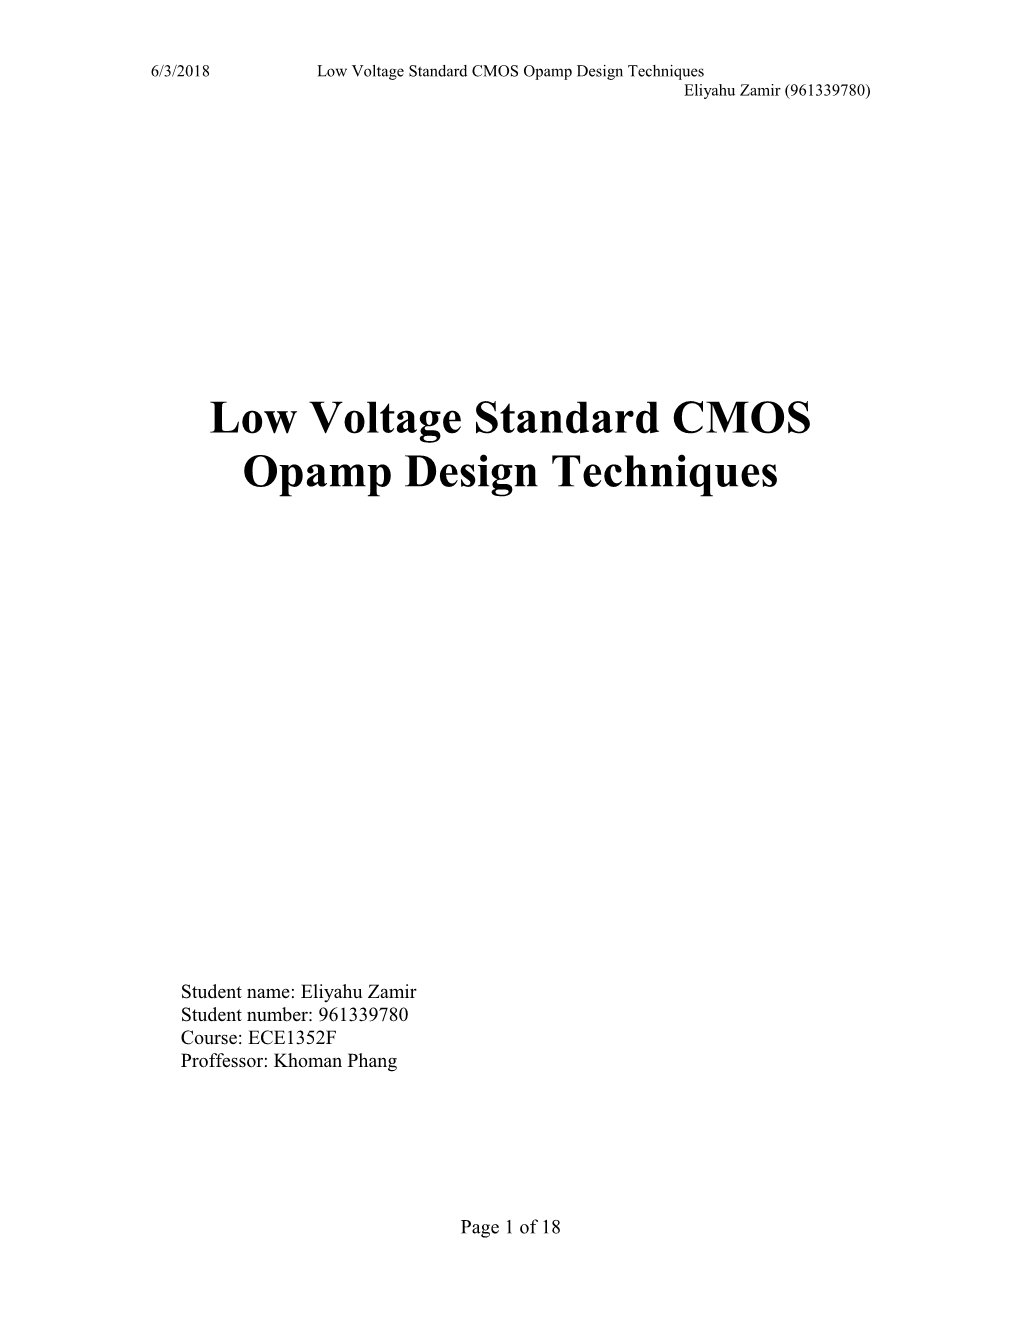 Low Voltage Standard CMOS Opamp Design Techniques